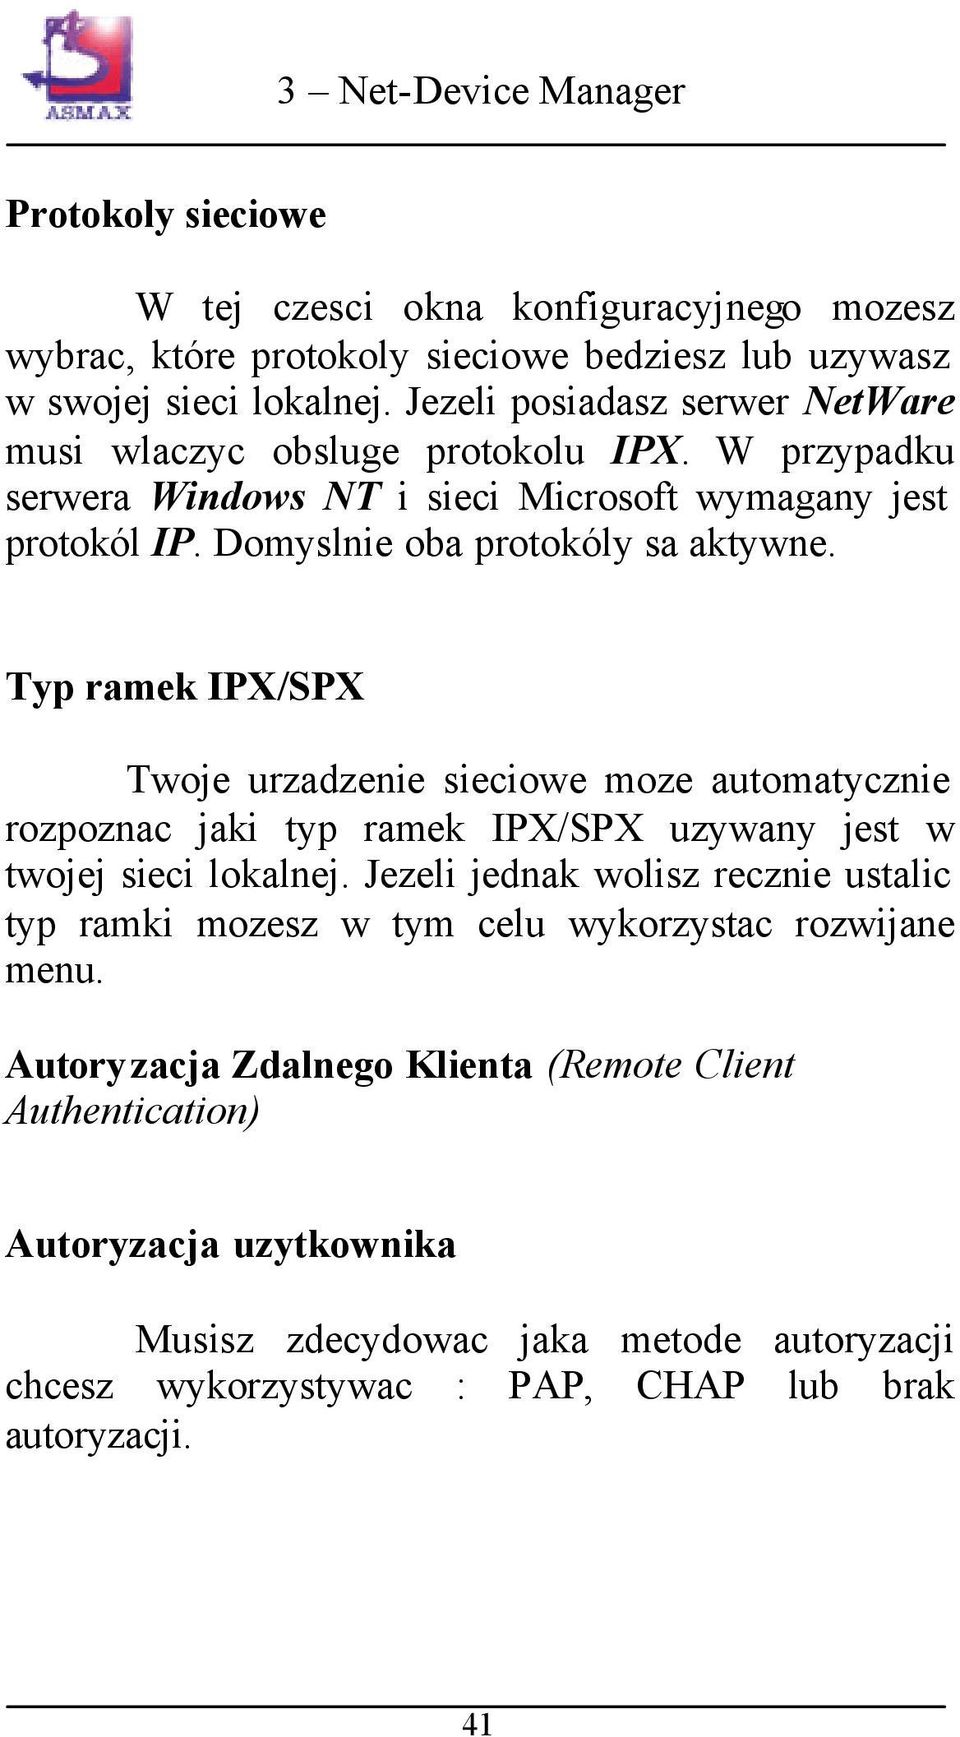 Typ ramek IPX/SPX Twoje urzadzenie sieciowe moze automatycznie rozpoznac jaki typ ramek IPX/SPX uzywany jest w twojej sieci lokalnej.